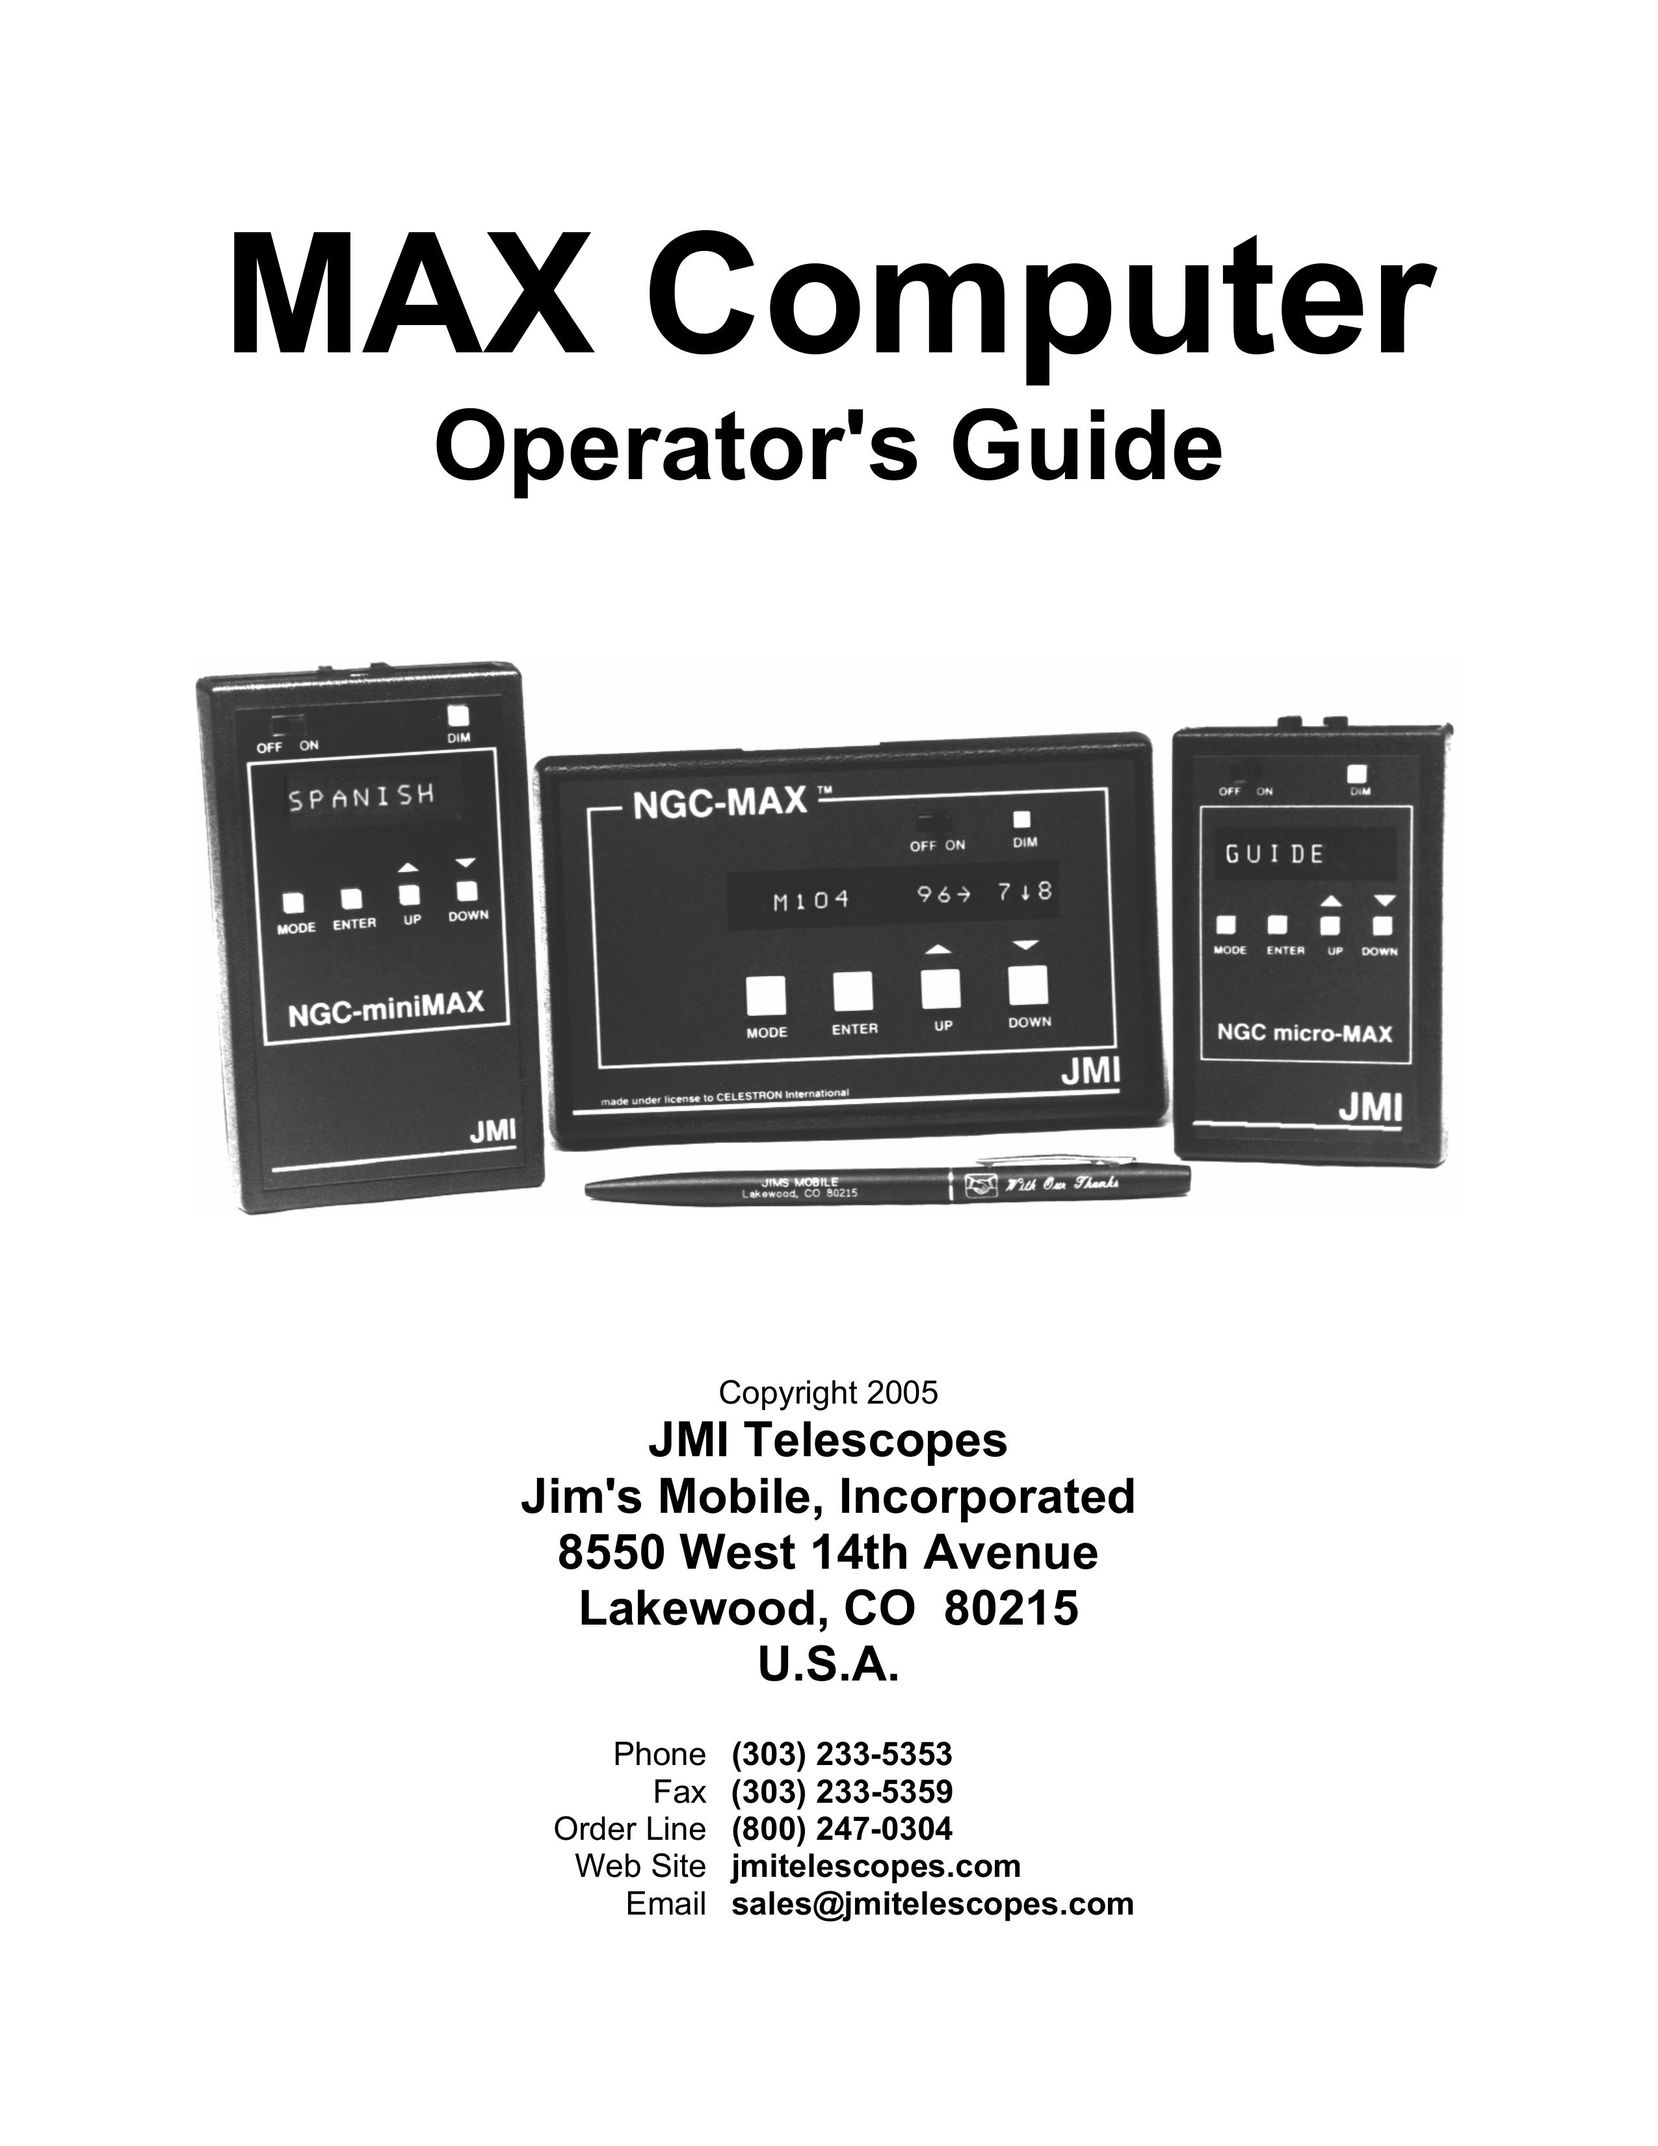 JMI Telescopes MAX Computer Personal Computer User Manual